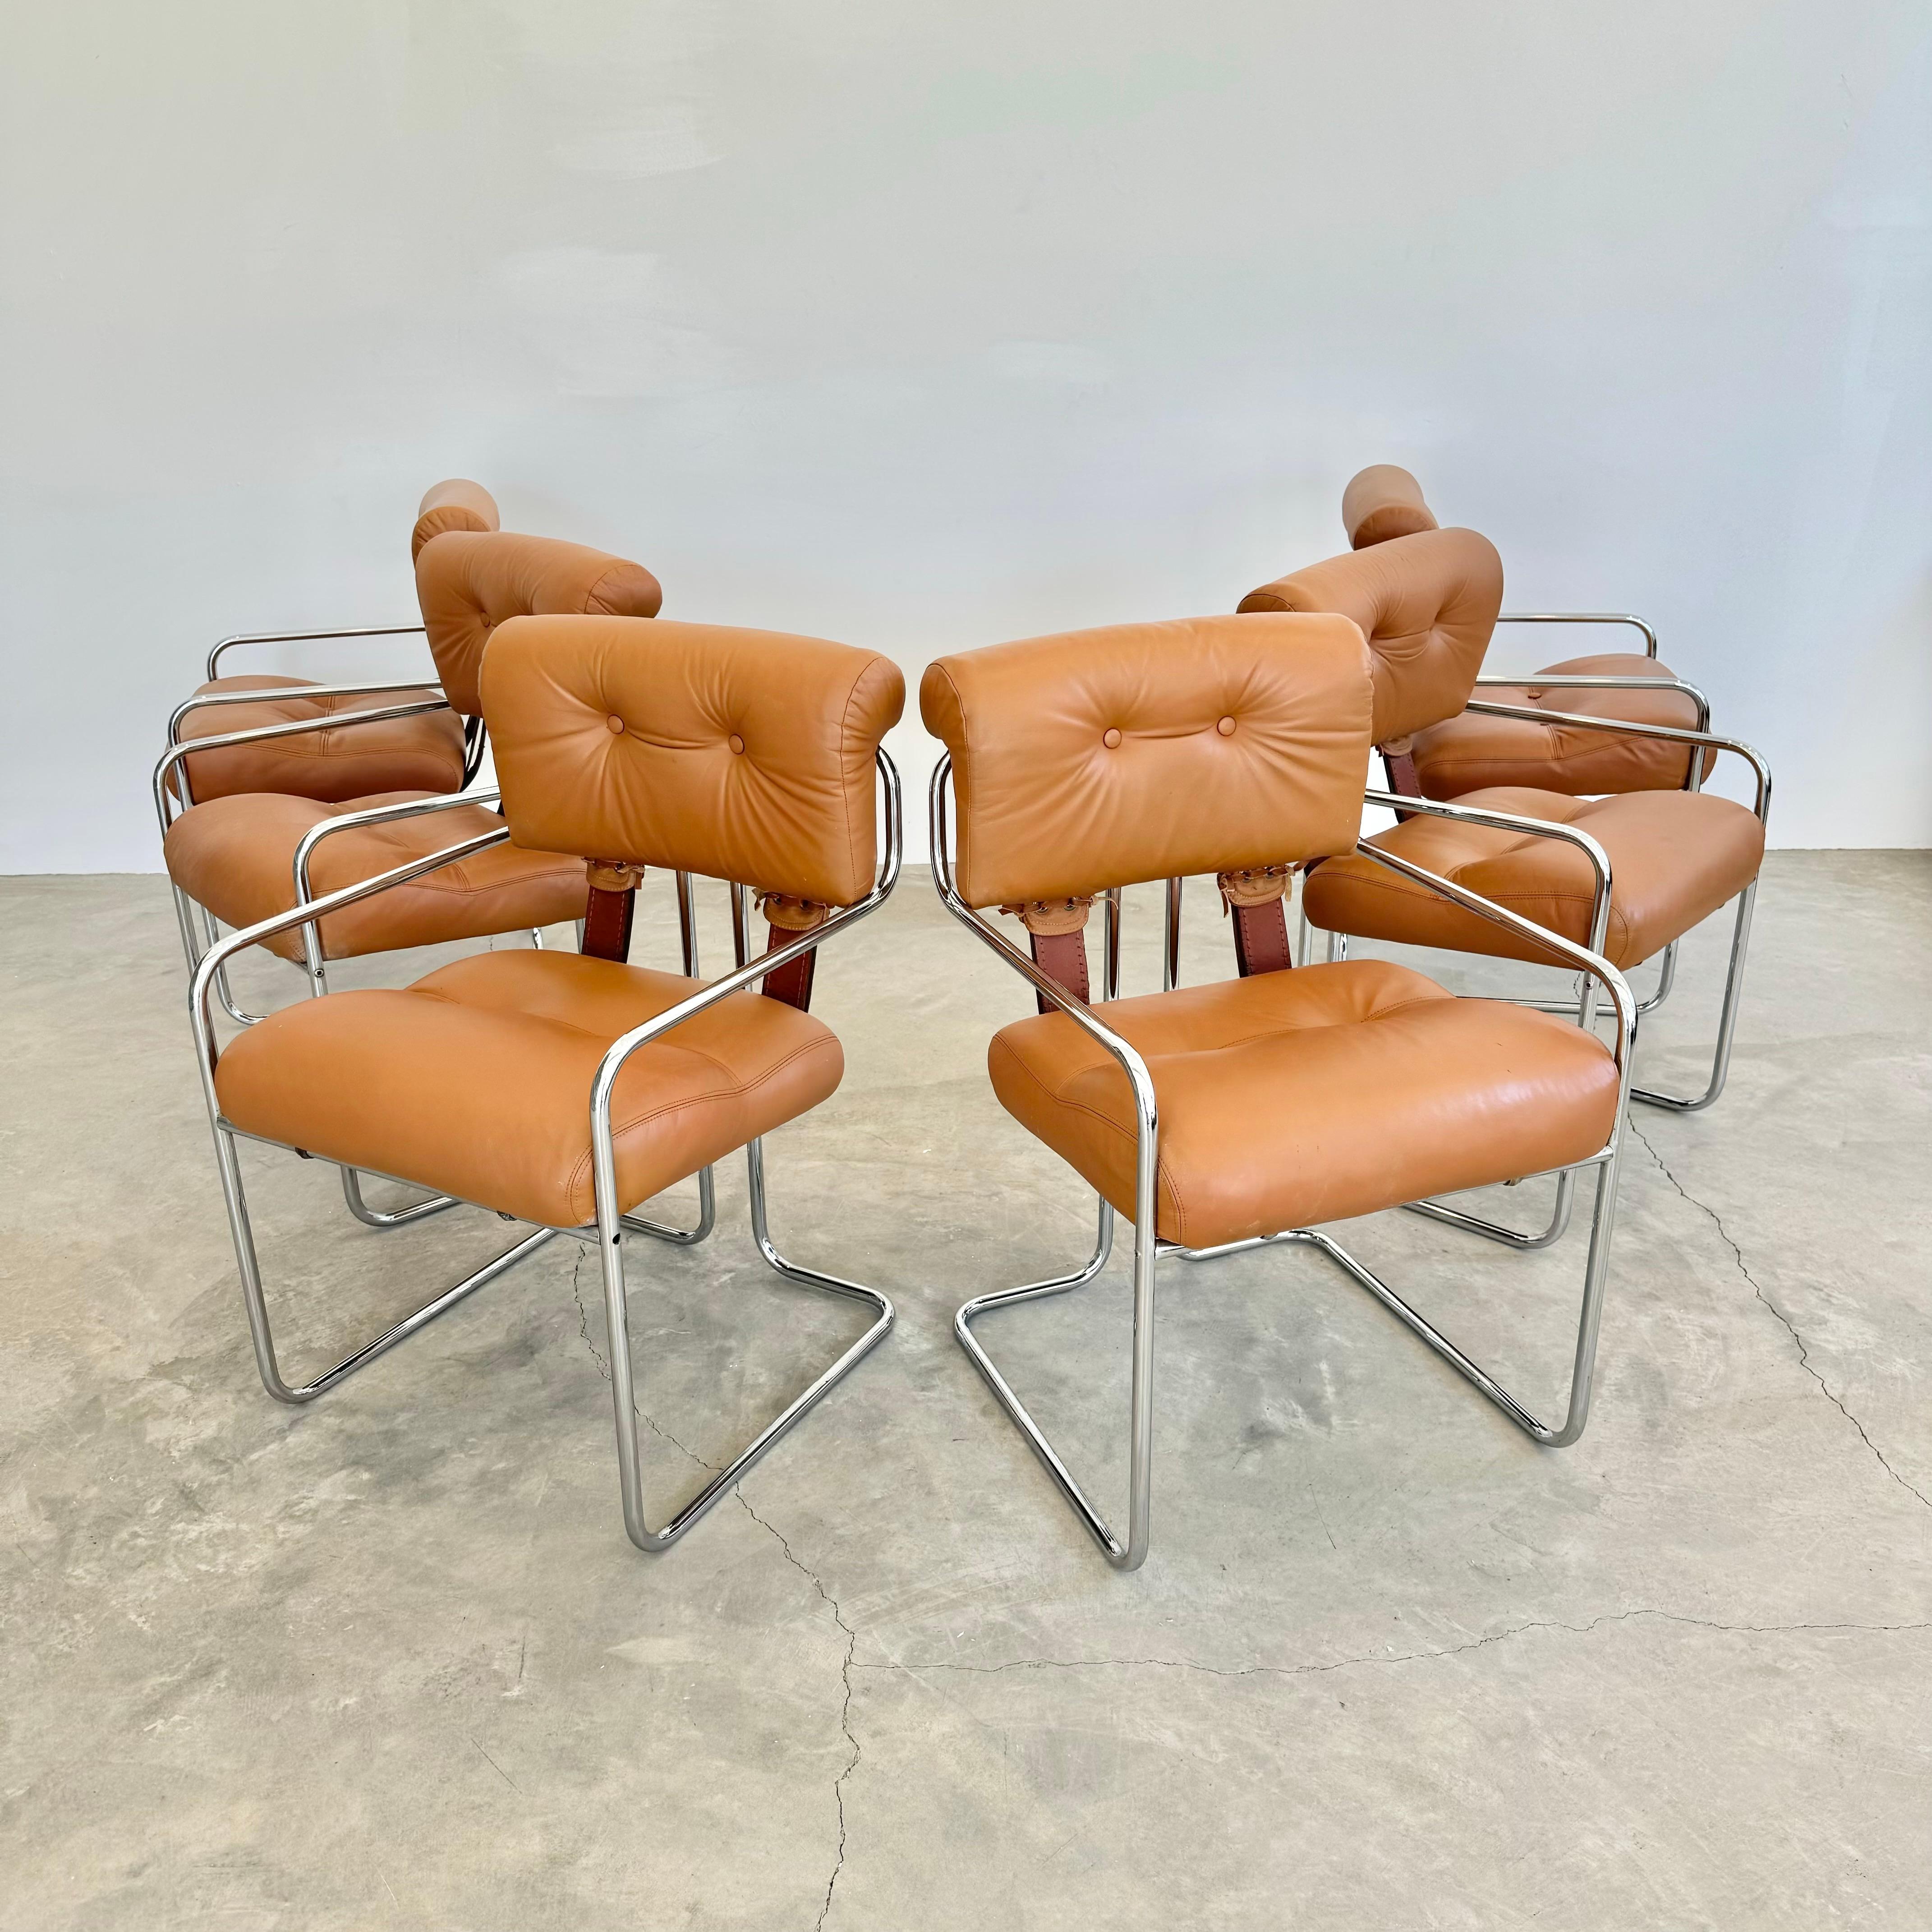 Superbe ensemble de 6 chaises Tucroma par Guido Faleschini pour Mariani, Pace. Magnifiques sièges et dossiers en cuir fauve d'origine et cadre tubulaire chromé classique. Ces chaises, qui font partie intégrante du design italien moderne,